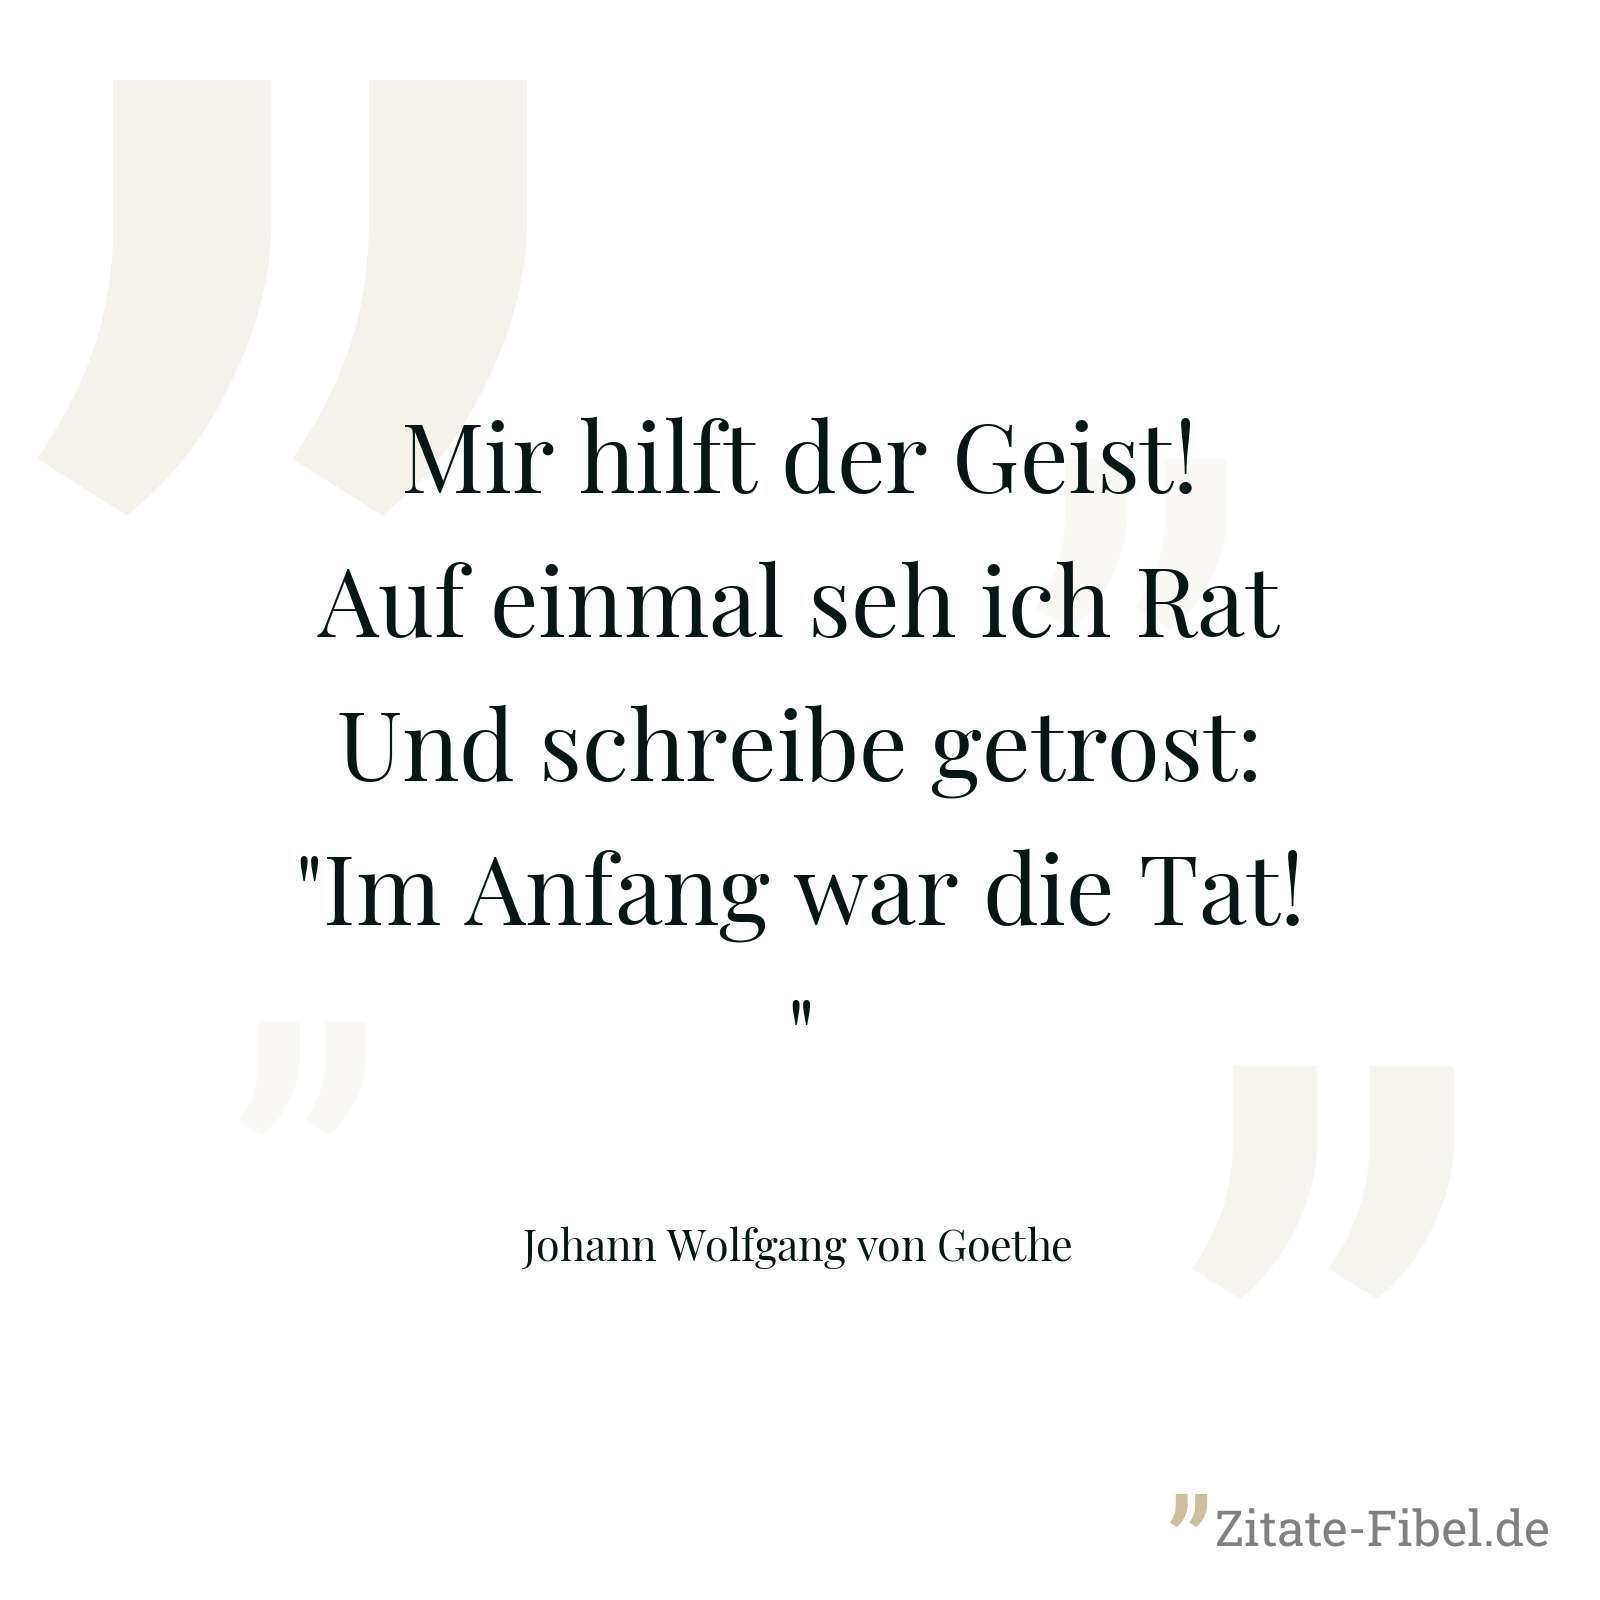 Mir hilft der Geist! Auf einmal seh ich Rat Und schreibe getrost: "Im Anfang war die Tat!" - Johann Wolfgang von Goethe